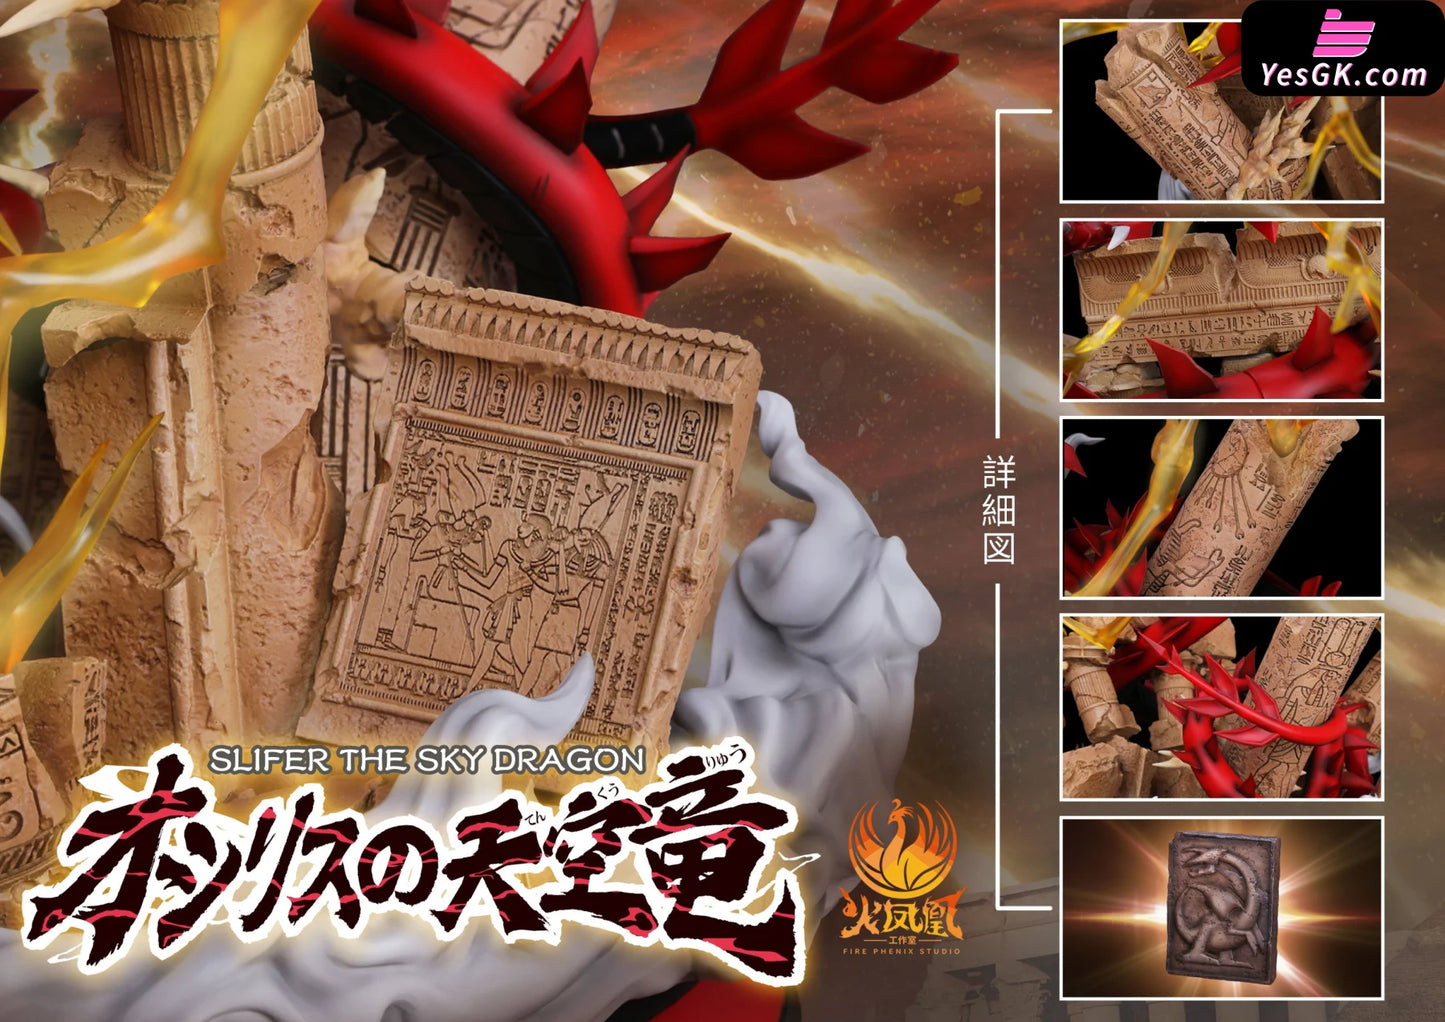 Yu-Gi-Oh Slifer The Sky Dragon Statue - Fire Phenix Studio [In Stock]